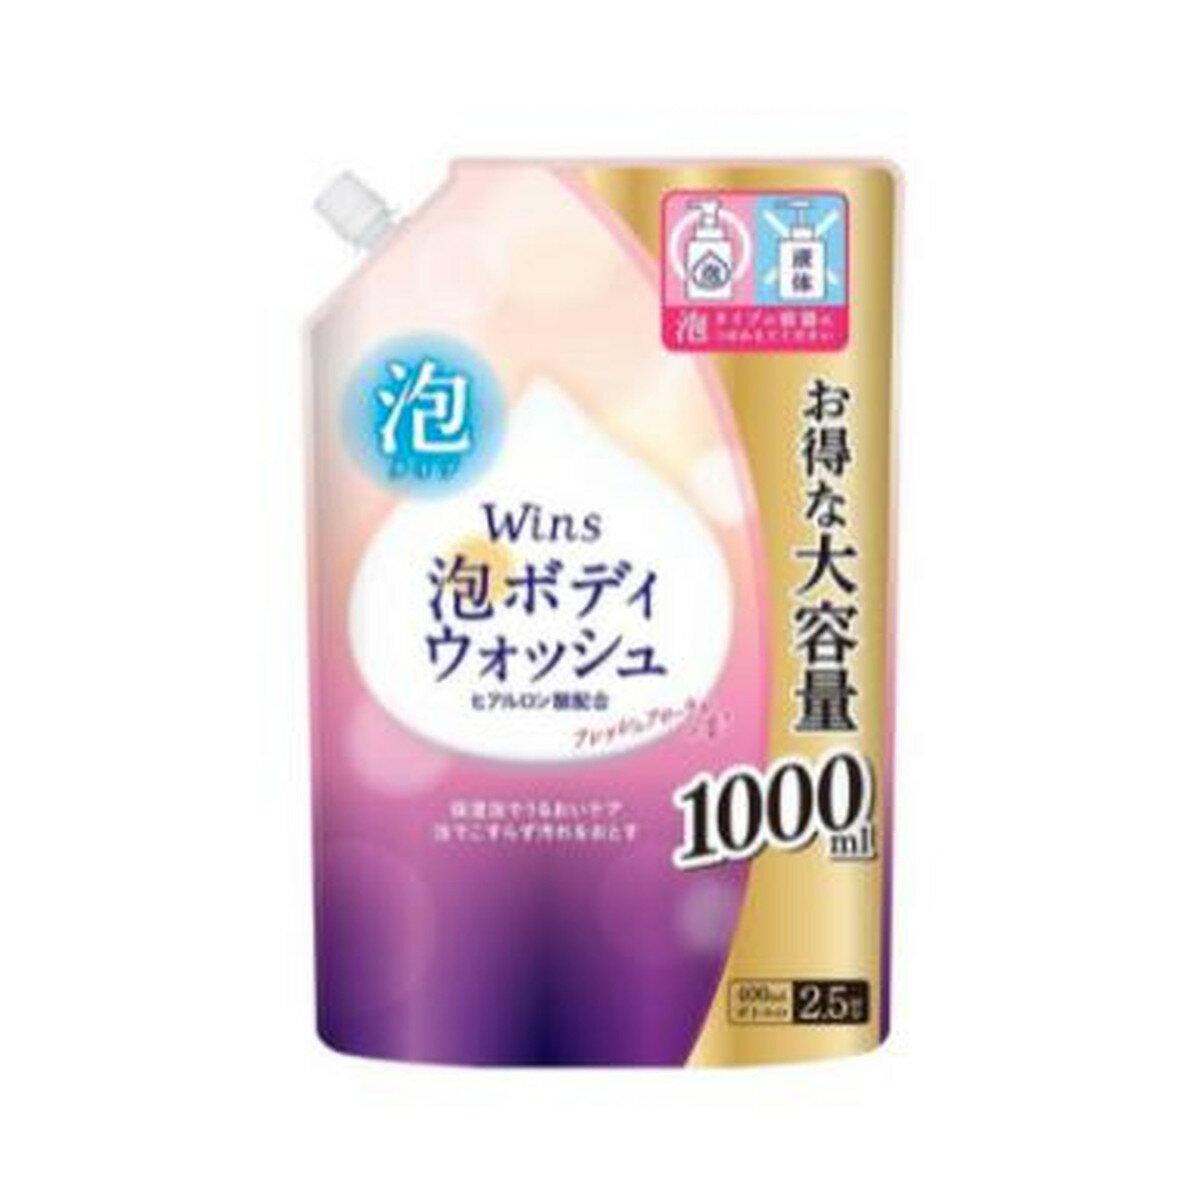 日本合成洗剤 ウインズ 泡 ボディウォッシュ 大容量 つめかえ用 1000ml